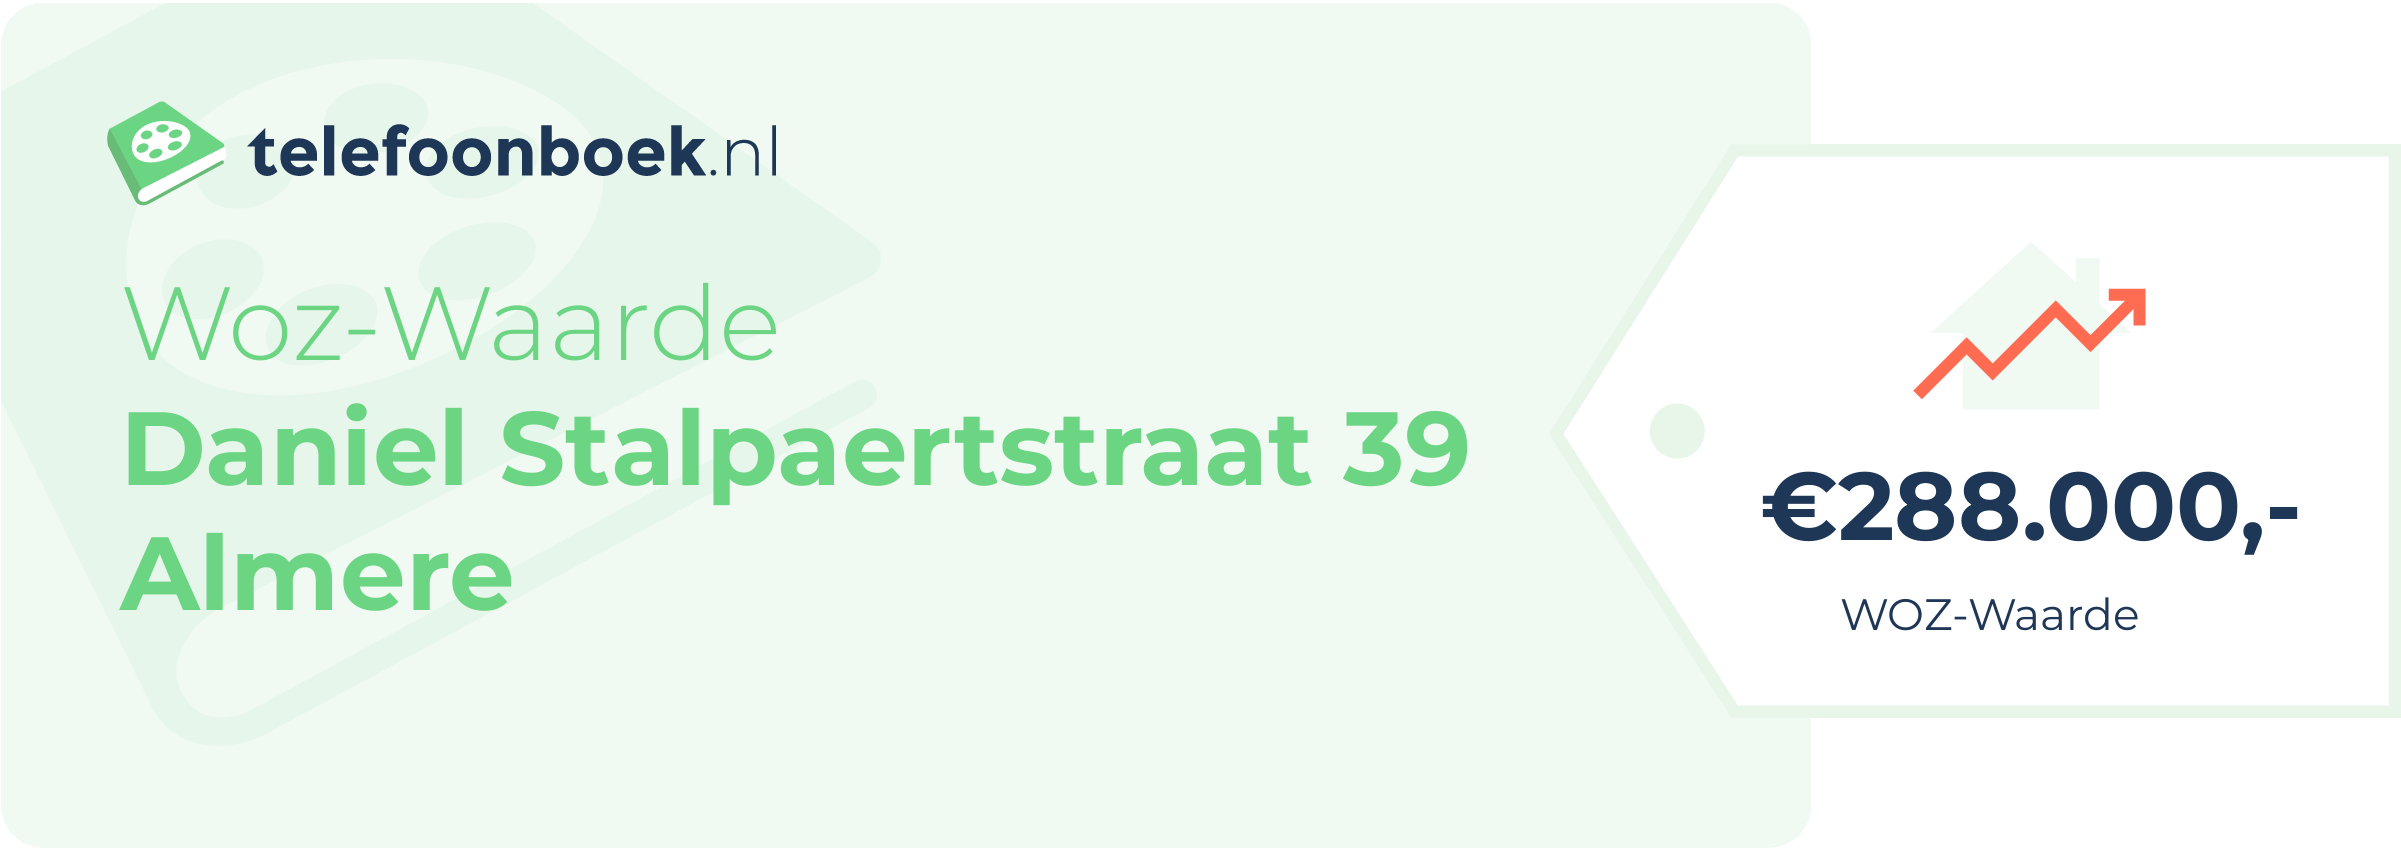 WOZ-waarde Daniel Stalpaertstraat 39 Almere